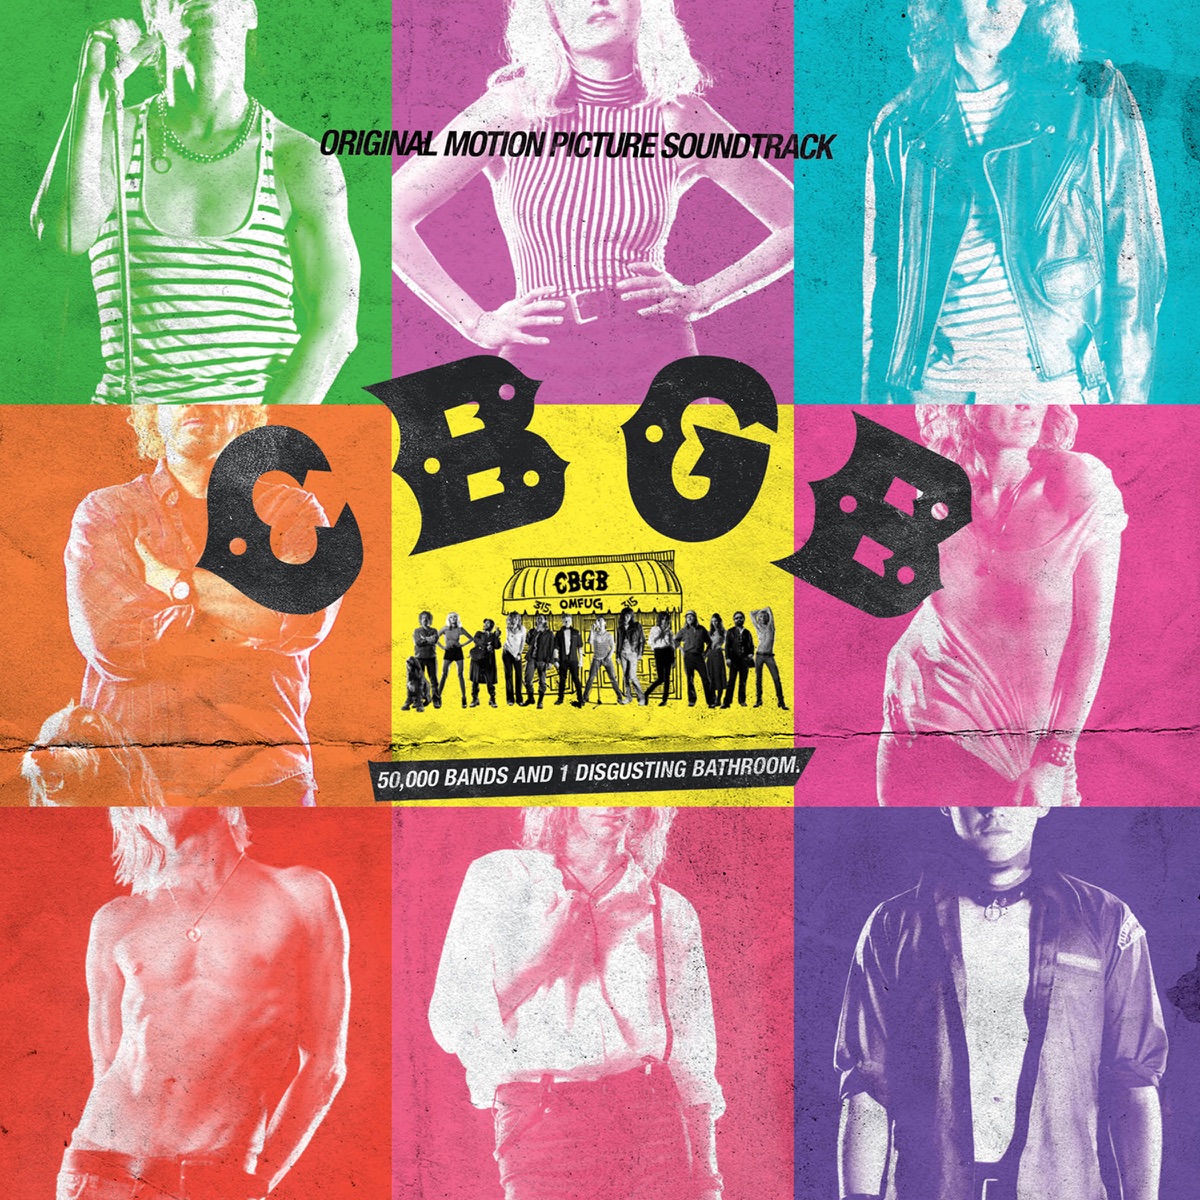 cbgb movie poster